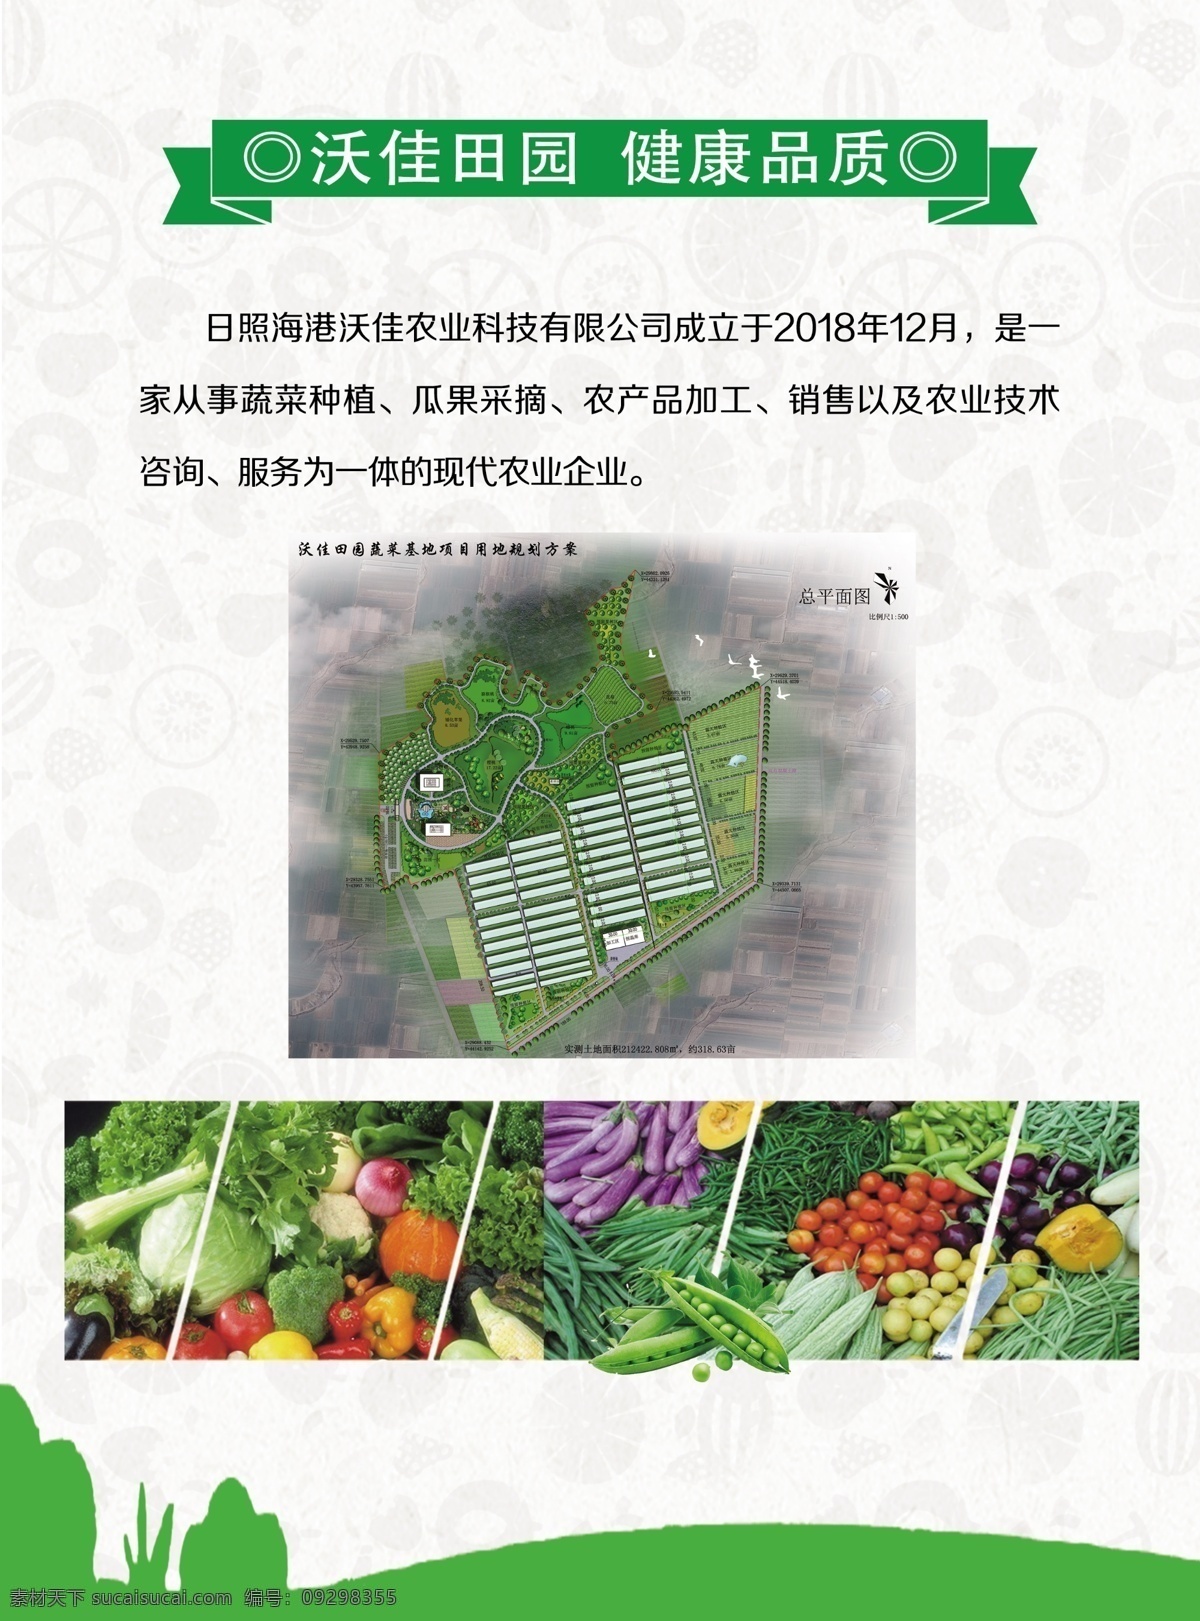 农业产品单页 农产品单页 蔬菜水果 绿 标题 水果底图 绿底 国外广告设计